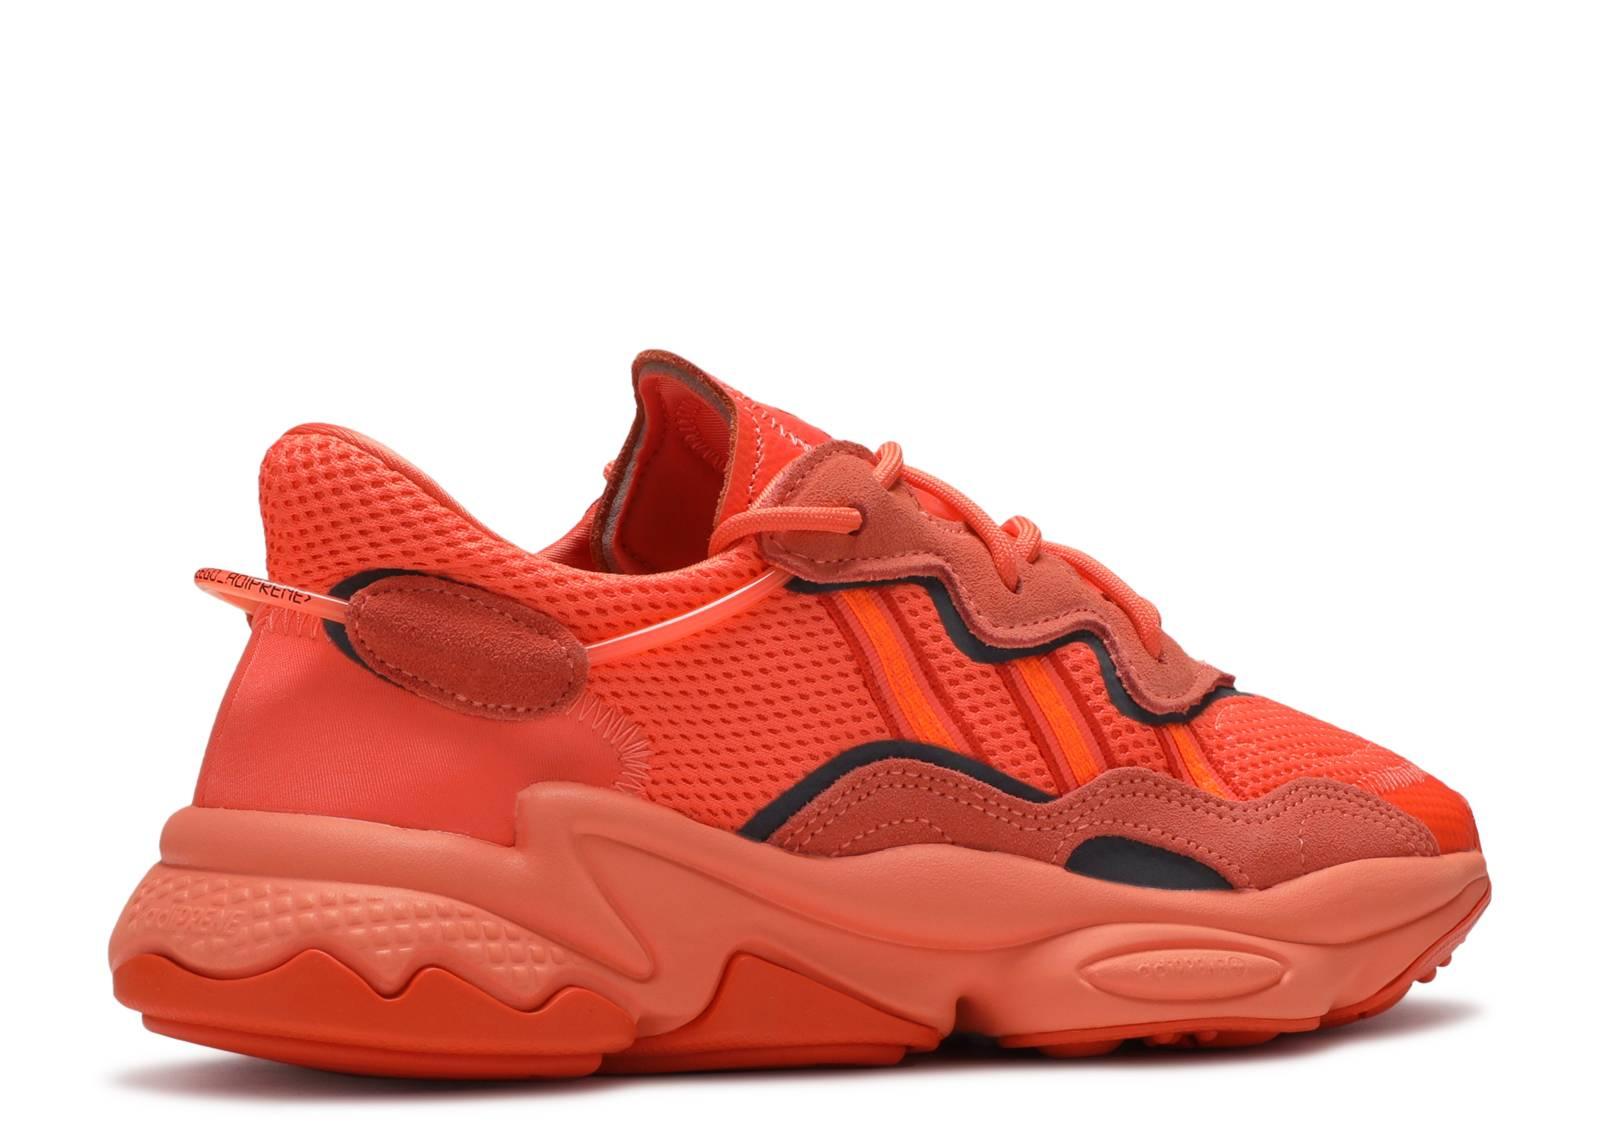 ozweego orange shoes